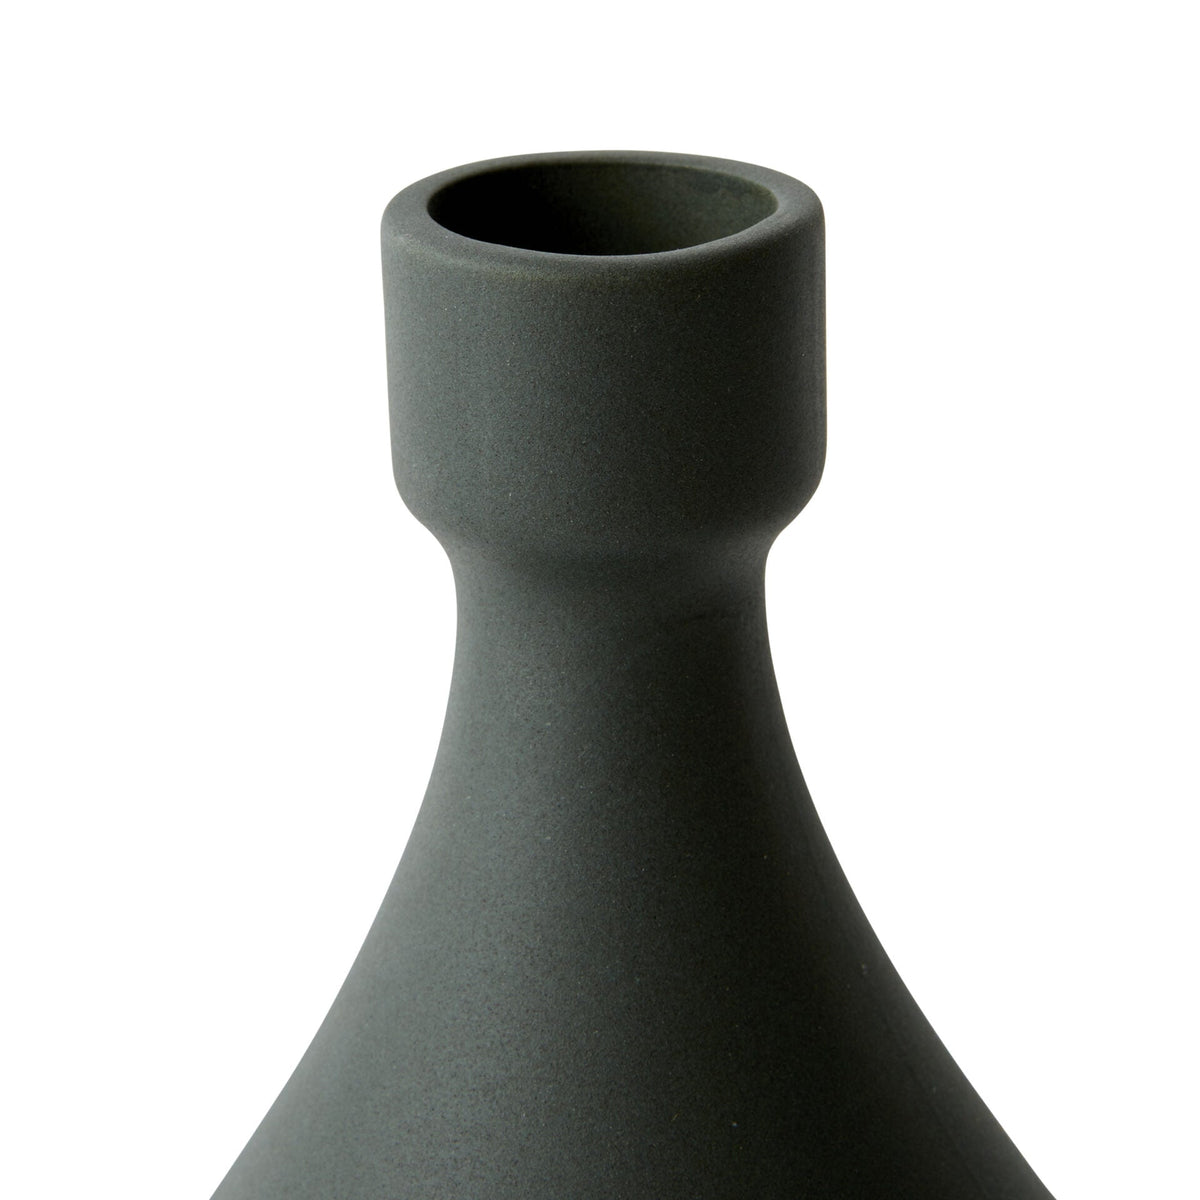 Handpainted Ceramic Curio Vase - Green